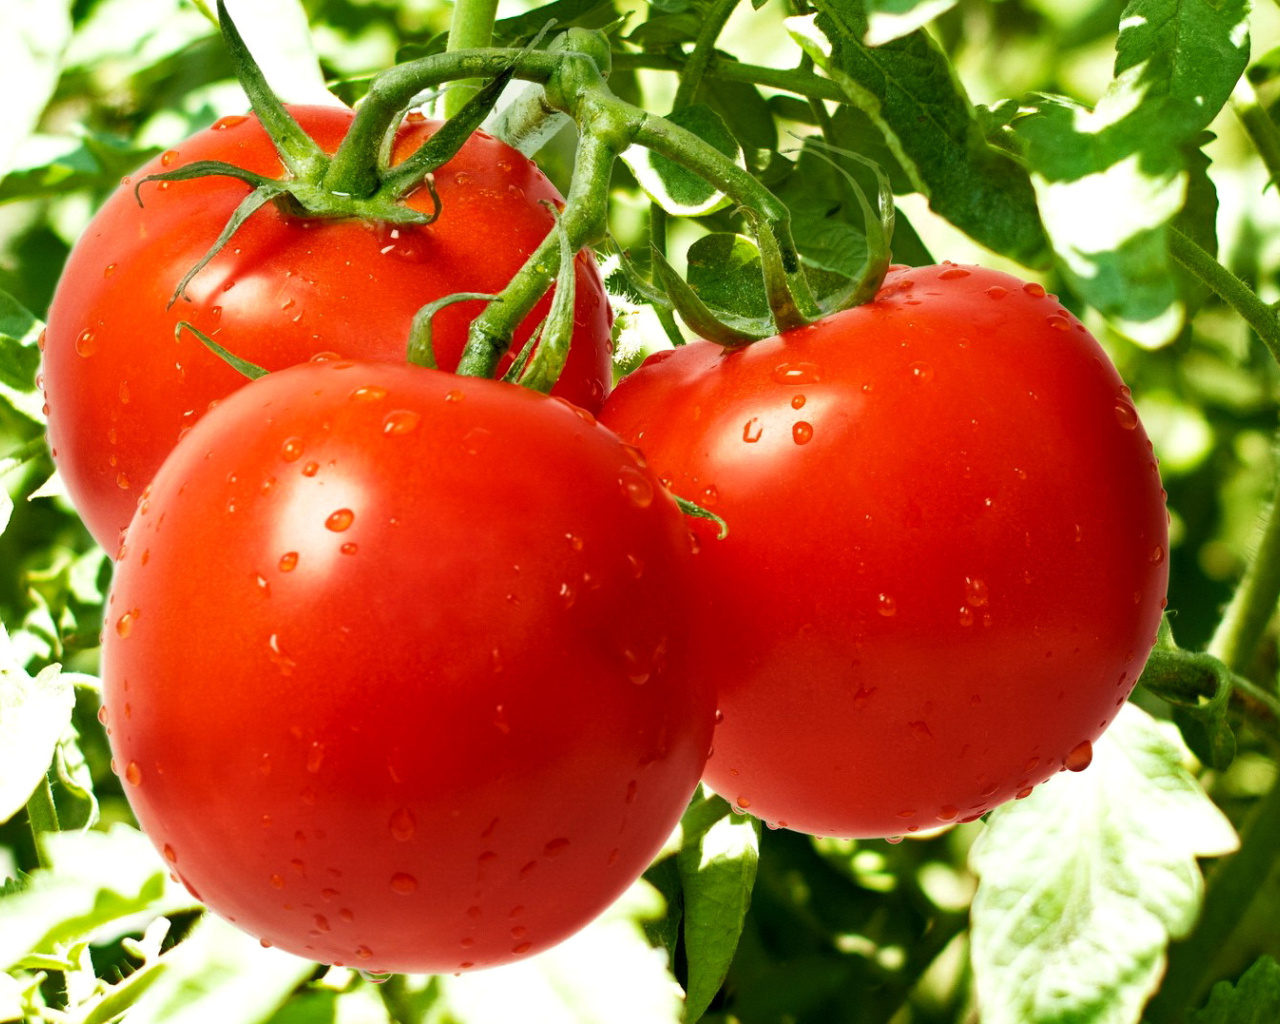 Sfondi Tomatoes on Bush 1280x1024